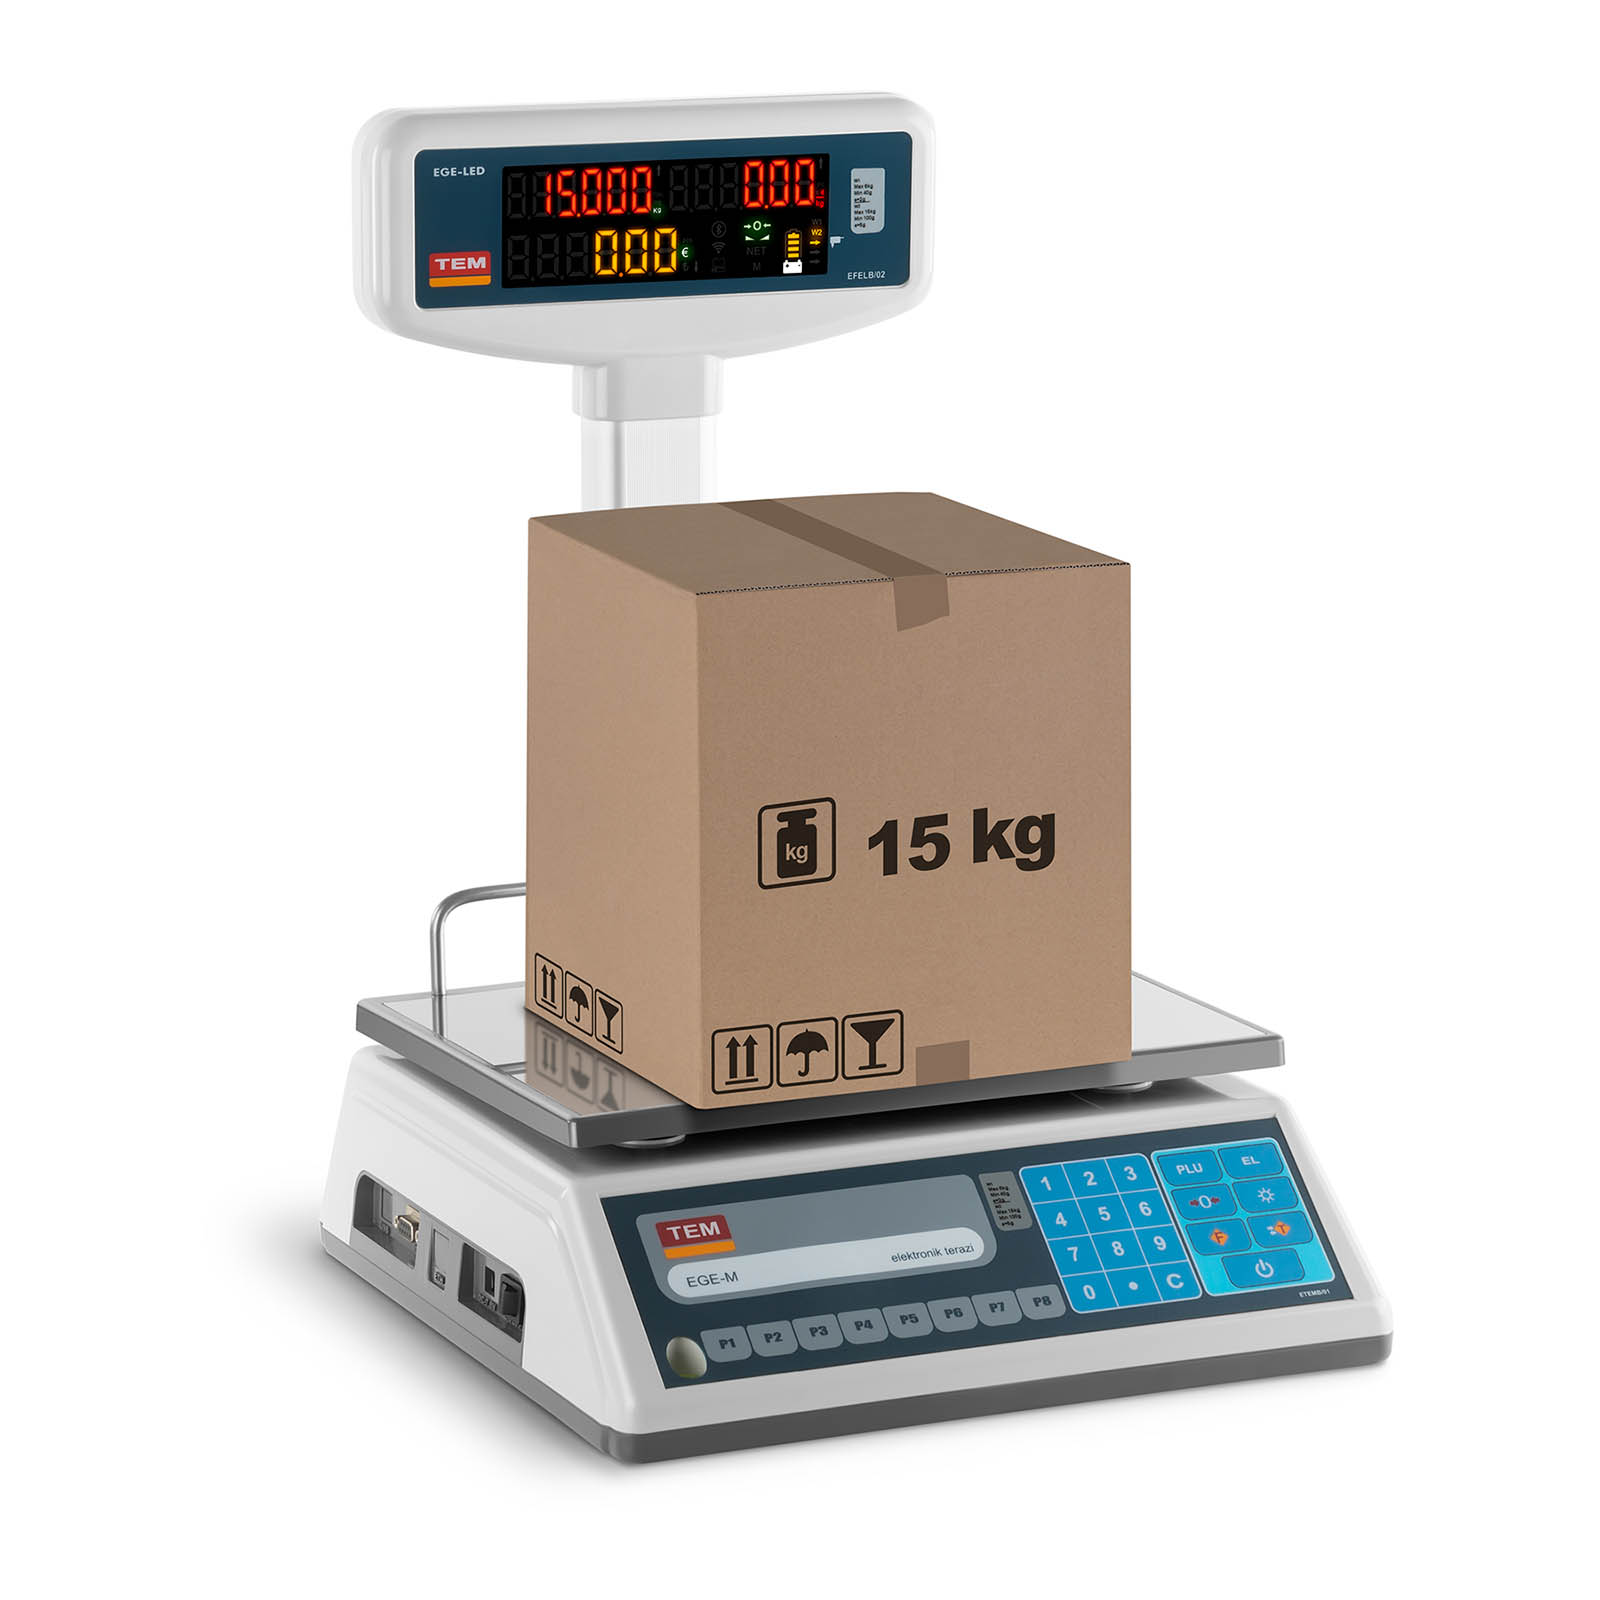 Obchodní váha s oboustranným LED displejem - 6 kg/2 g - 15 kg/5 g